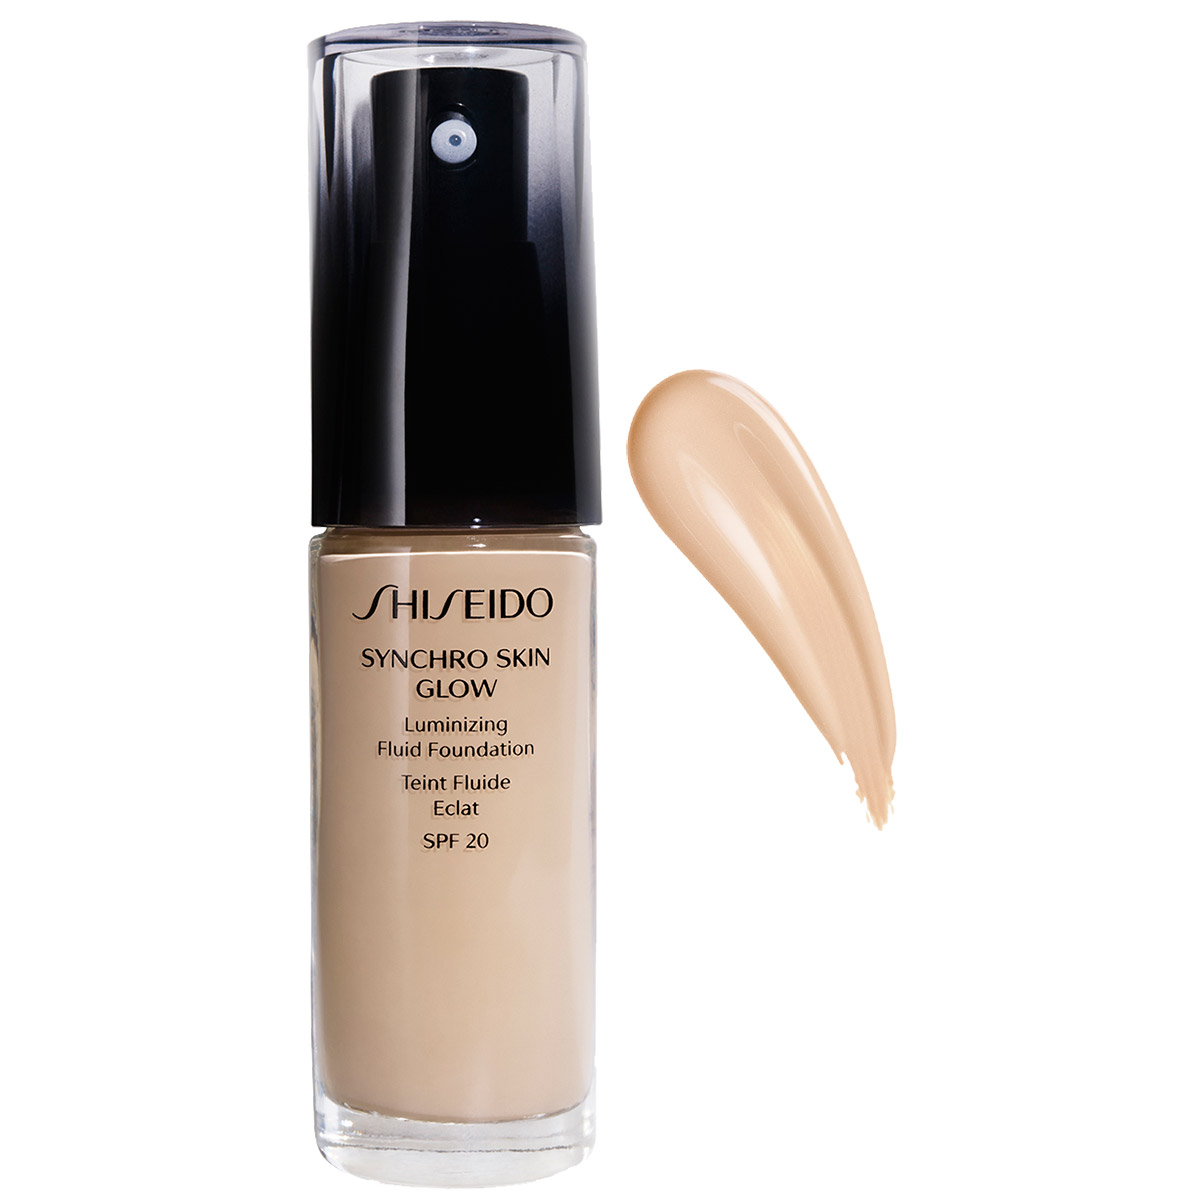 Synchro Skin Glow Luminizing Fluid Foundation, 30 ml Shiseido Meikkivoiteet